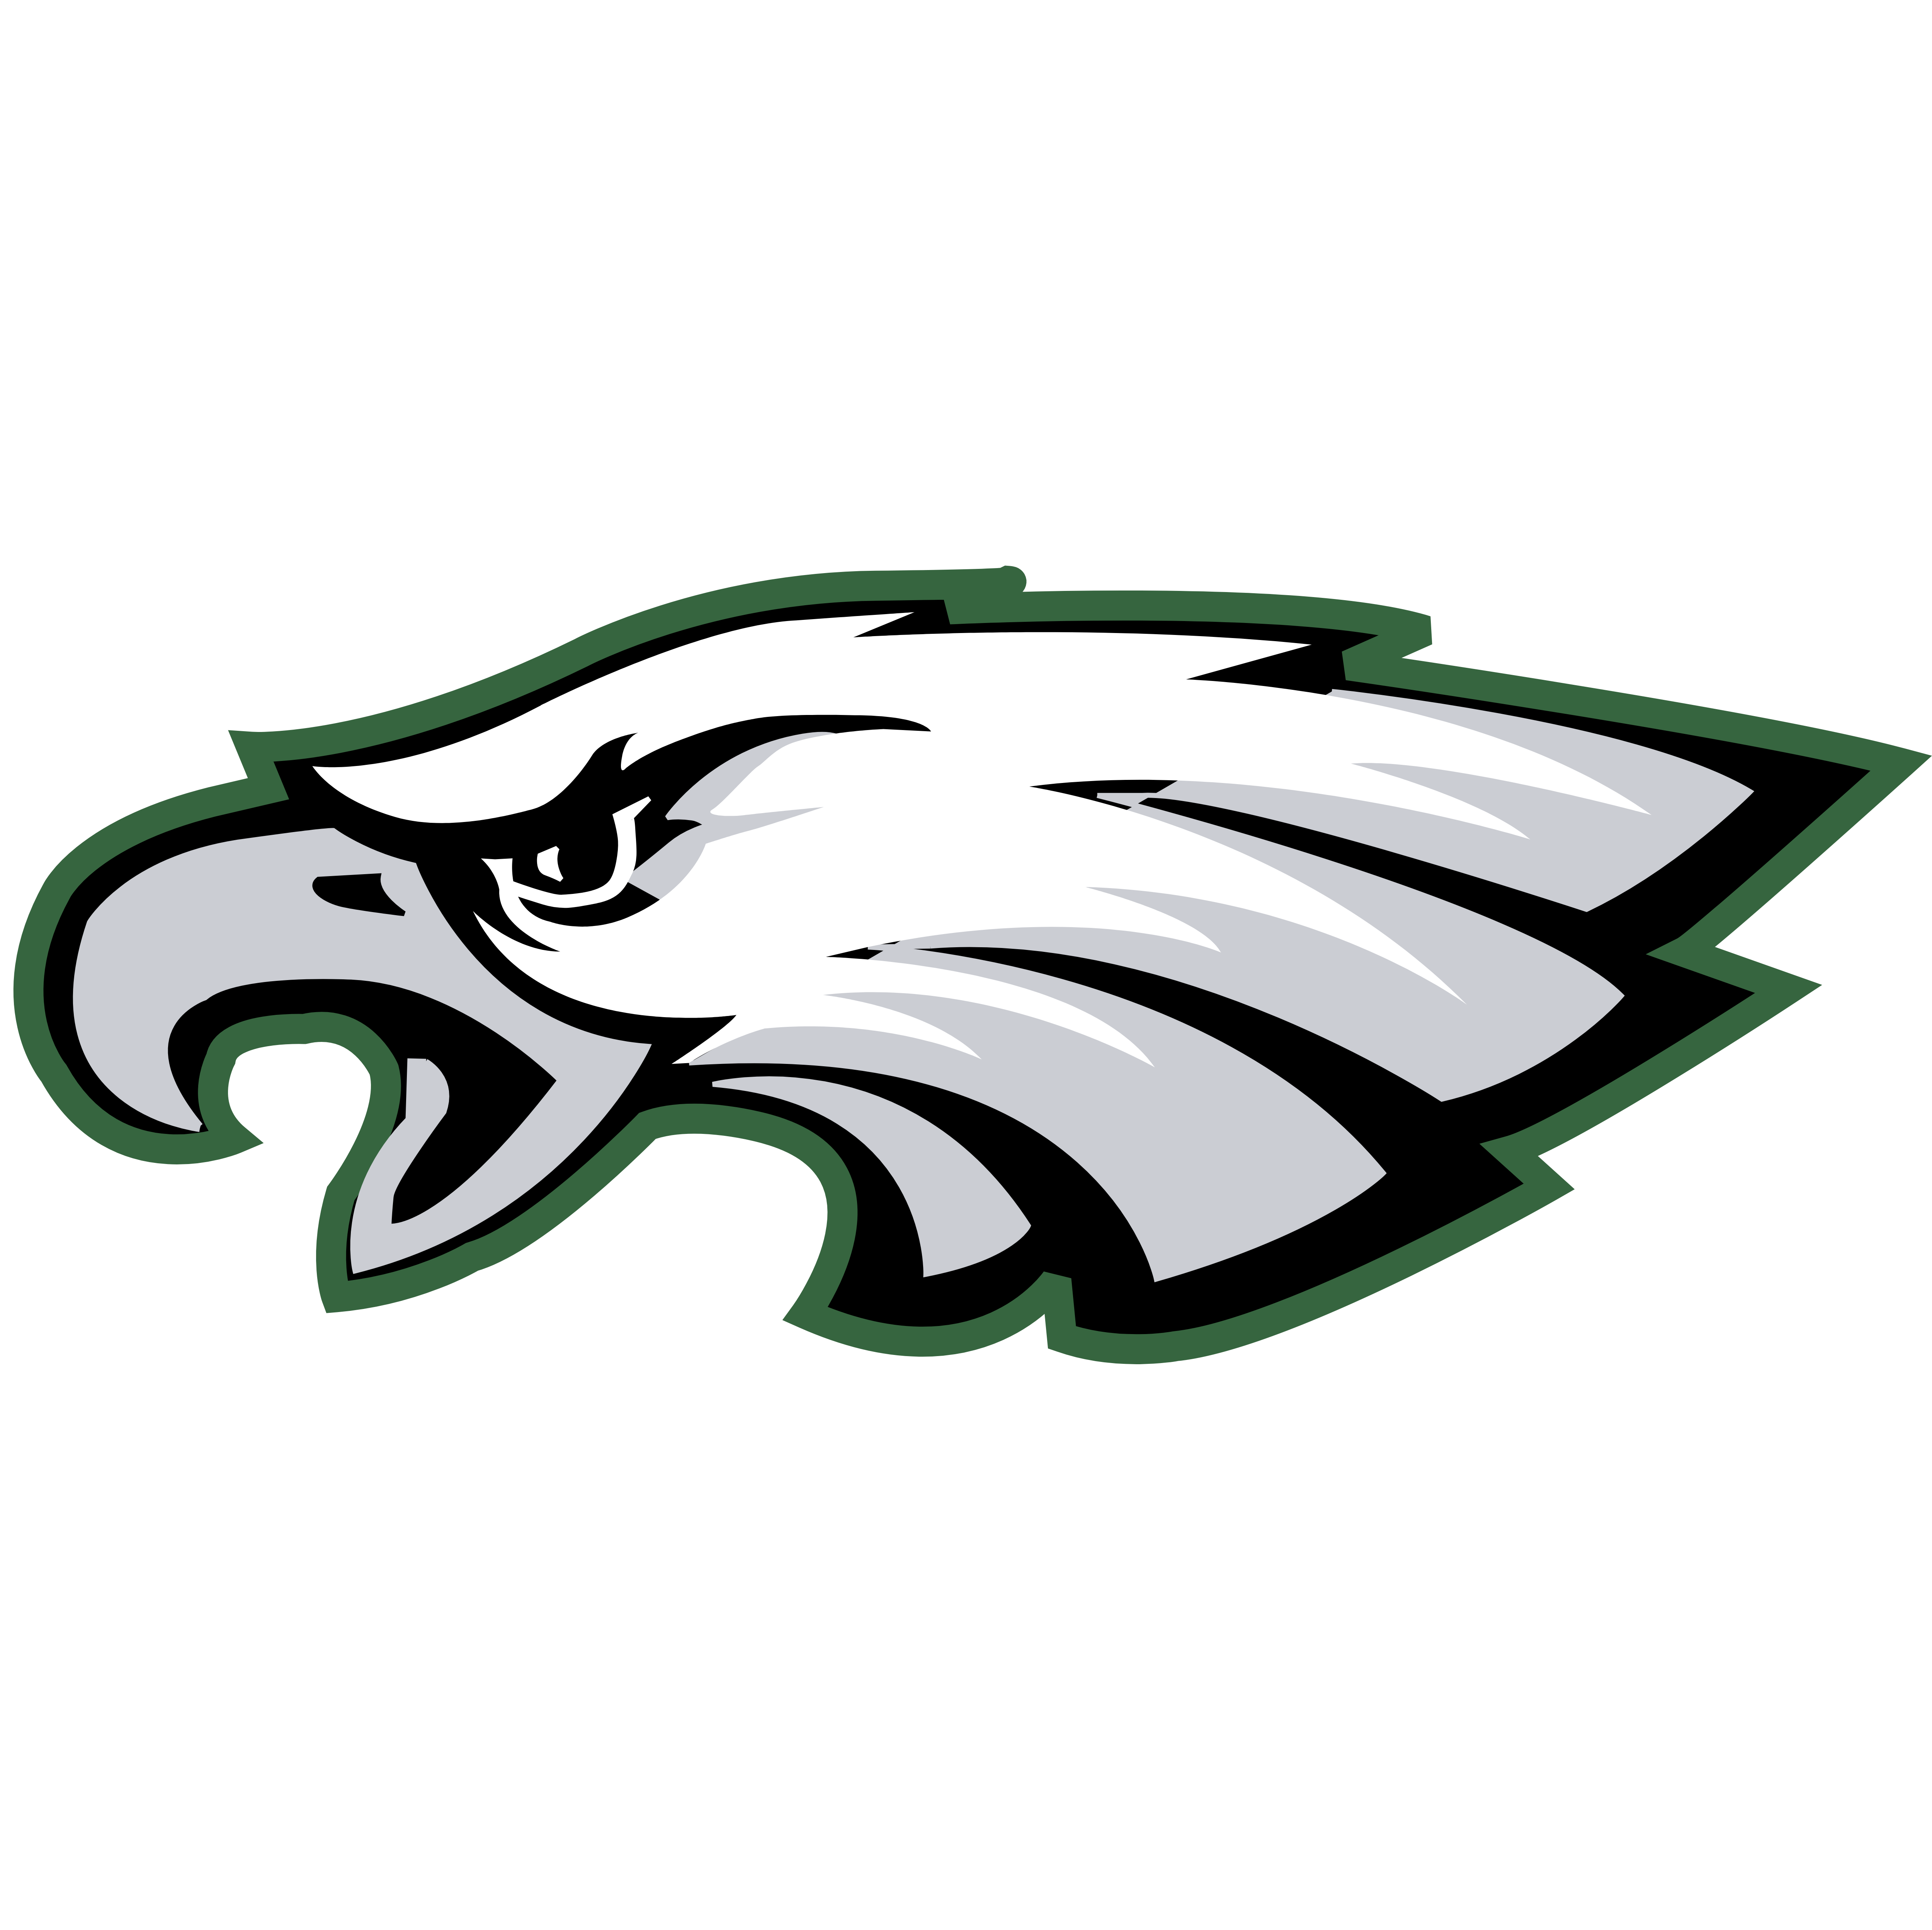 Philadelphia Eagles Logos His